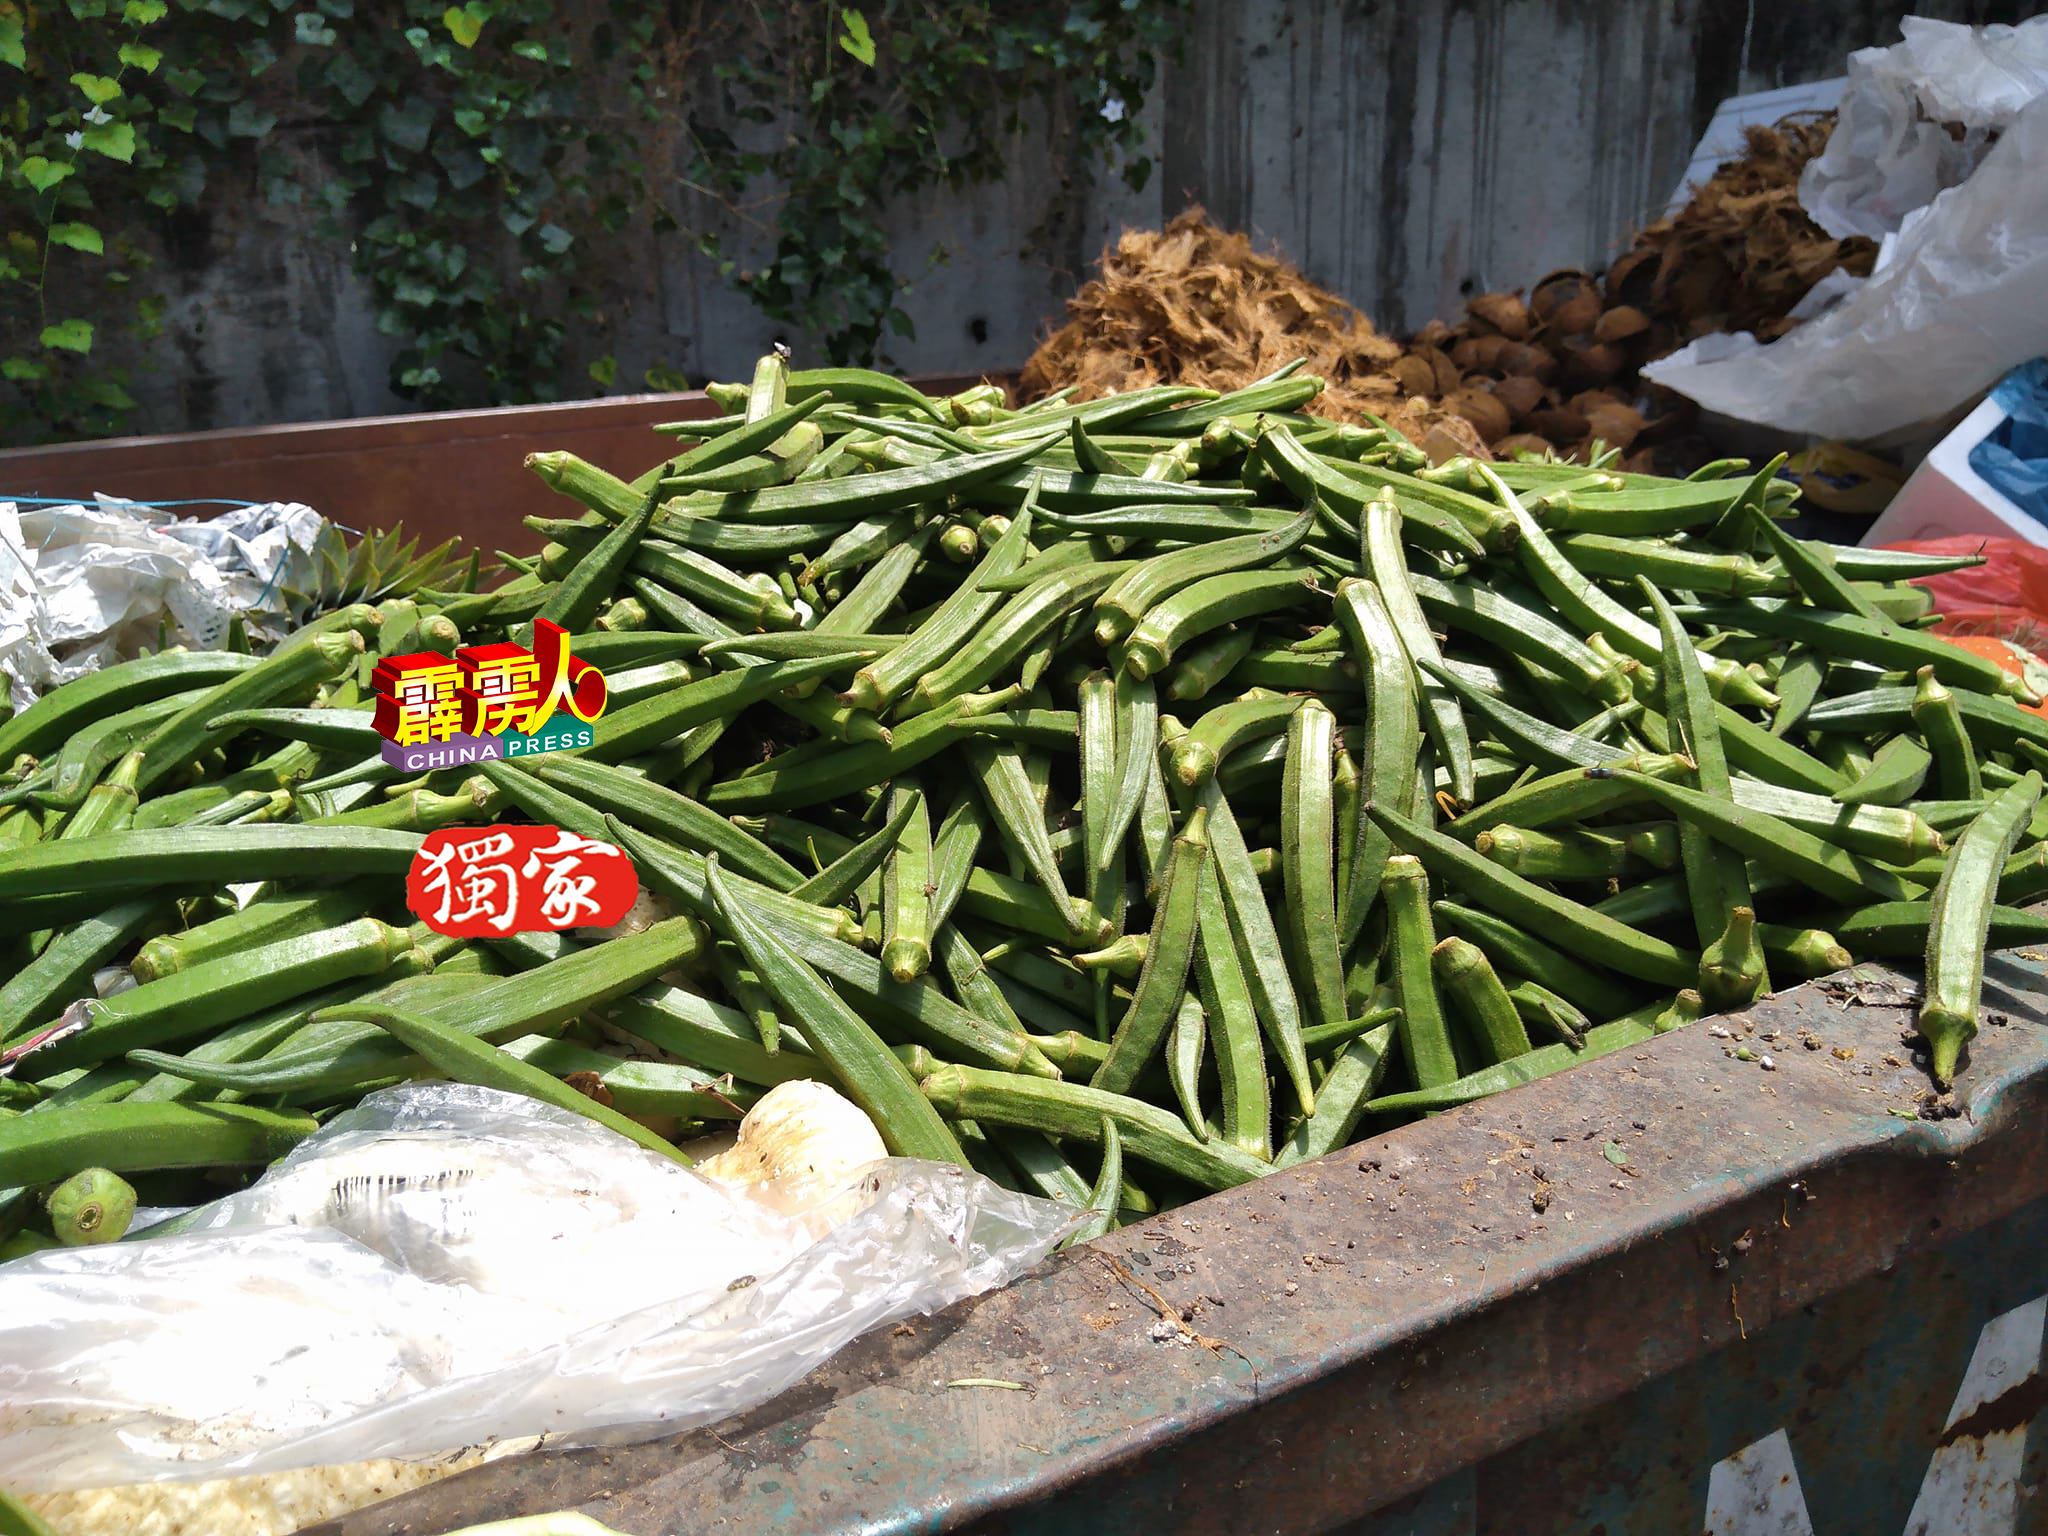 黄耀宗最近才把一批滞销的羊角豆丢弃，一来这些蔬菜不耐放，二来为控制价格。